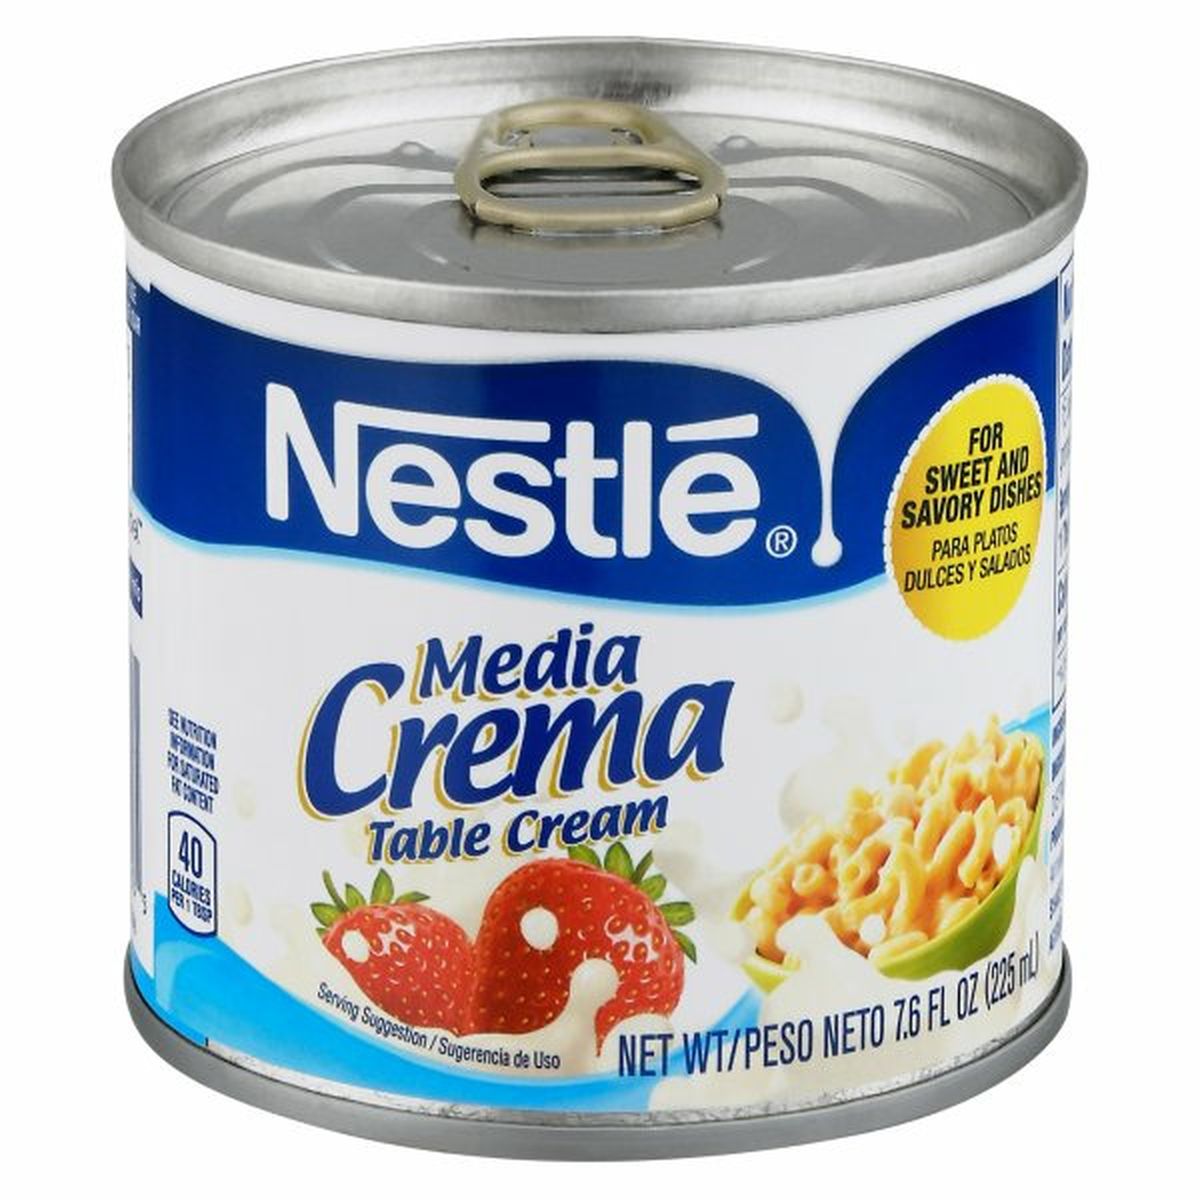 Calories in Media Crema Table Cream